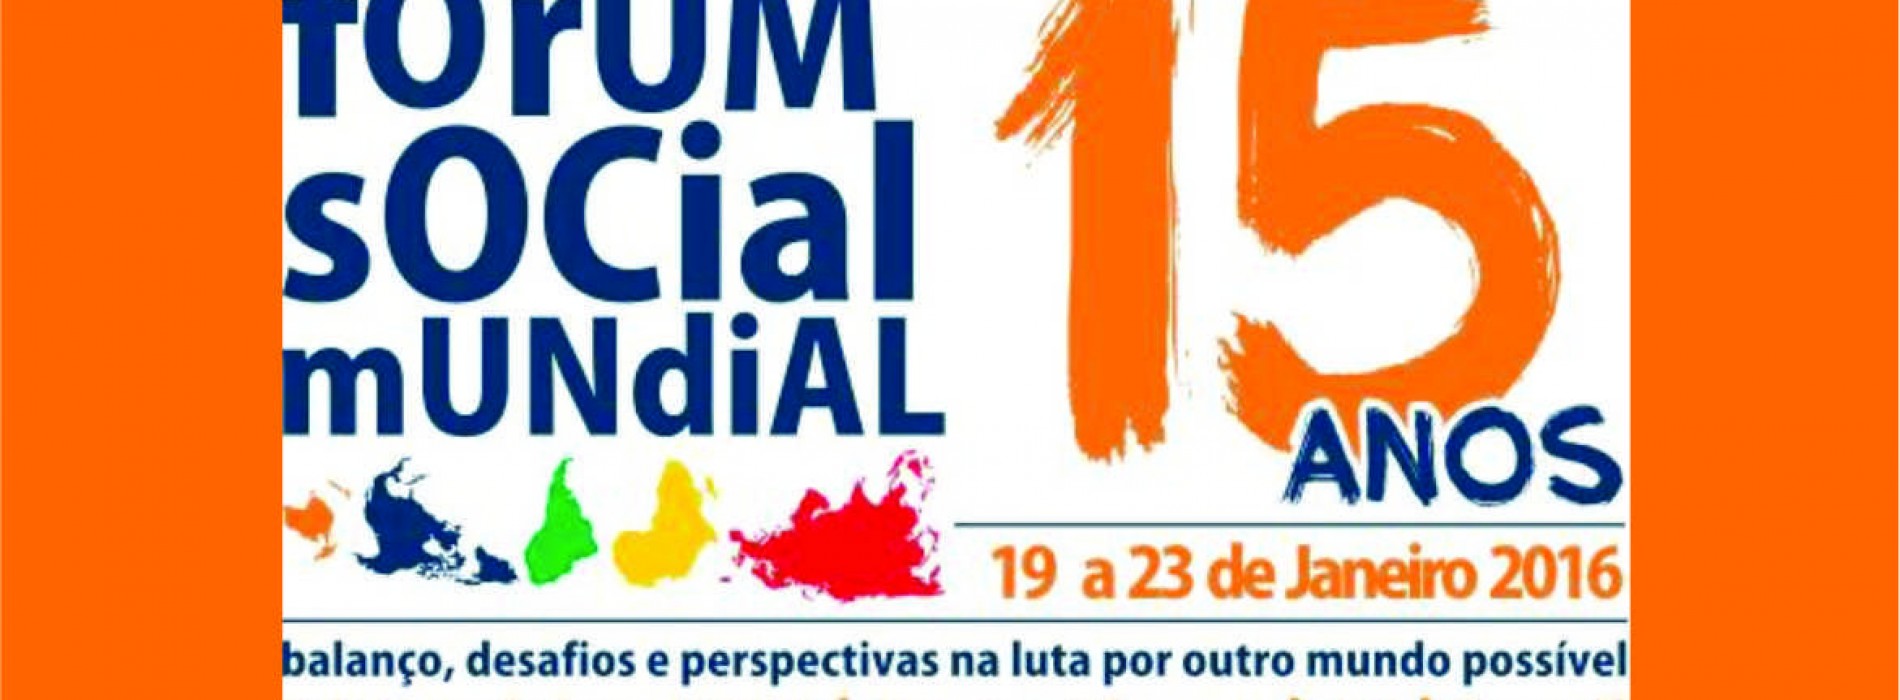 Fórum Social Mundial 2016